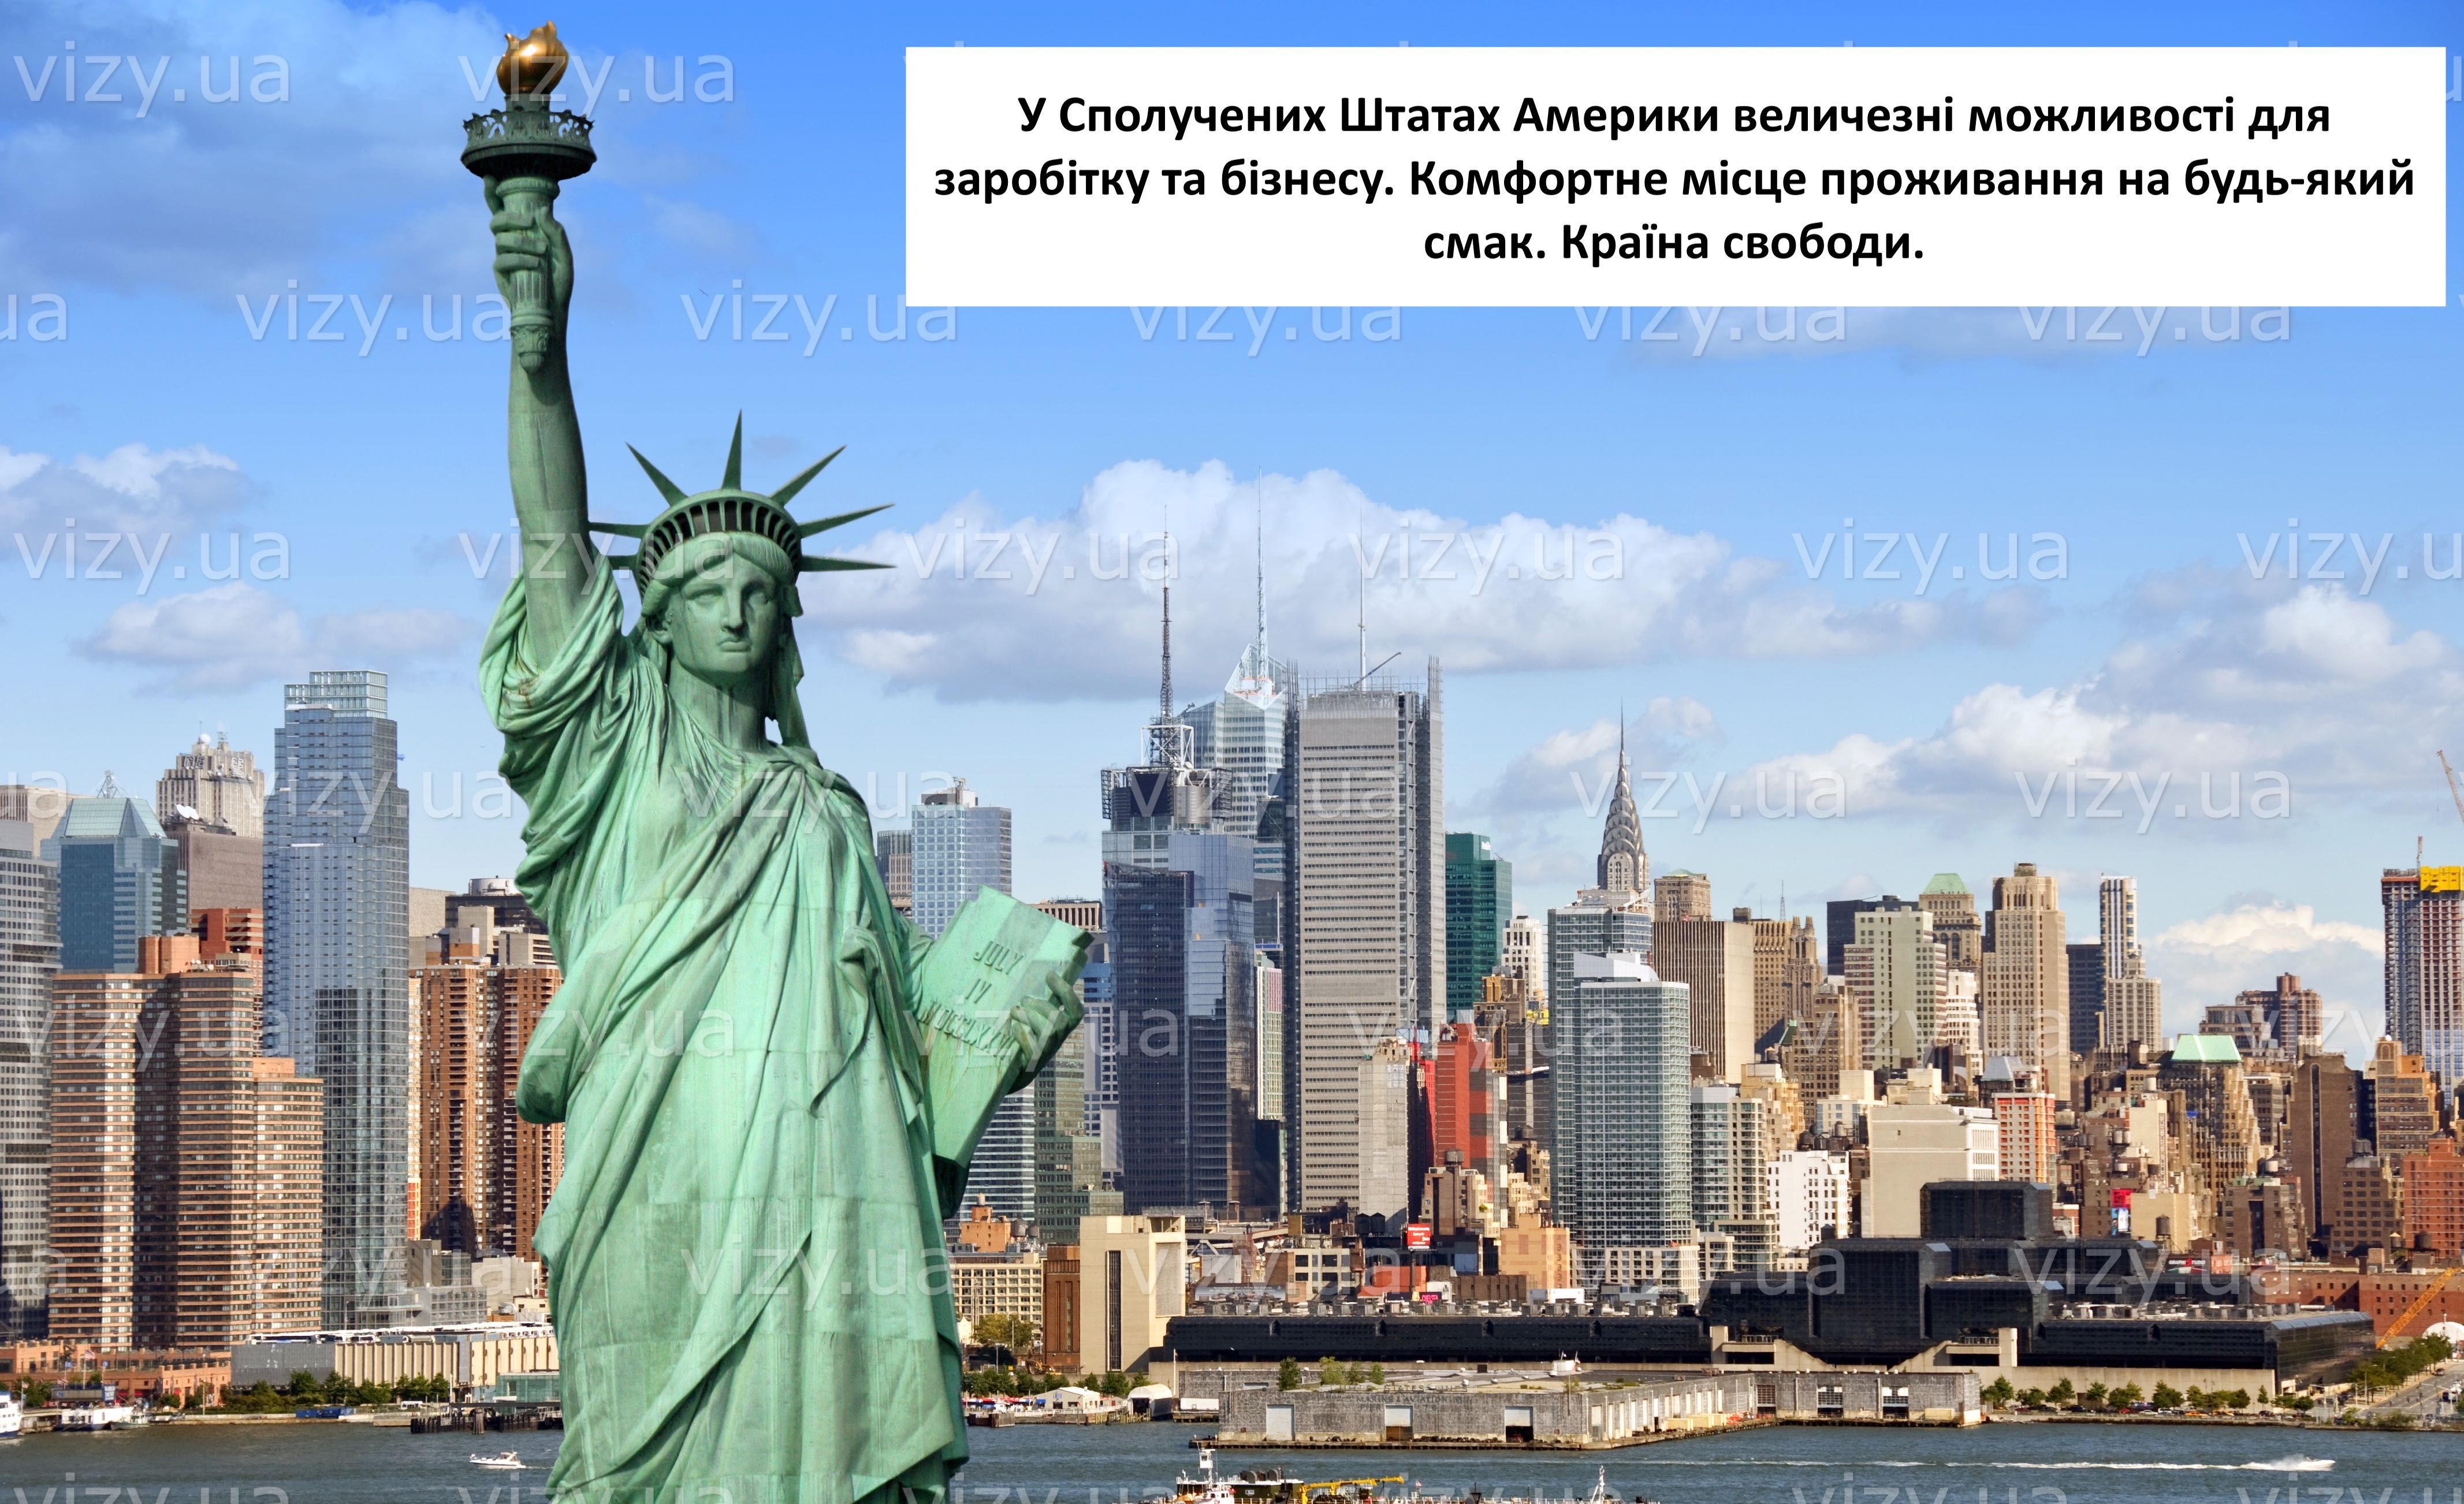 Оформлення віз до США vizy.ua